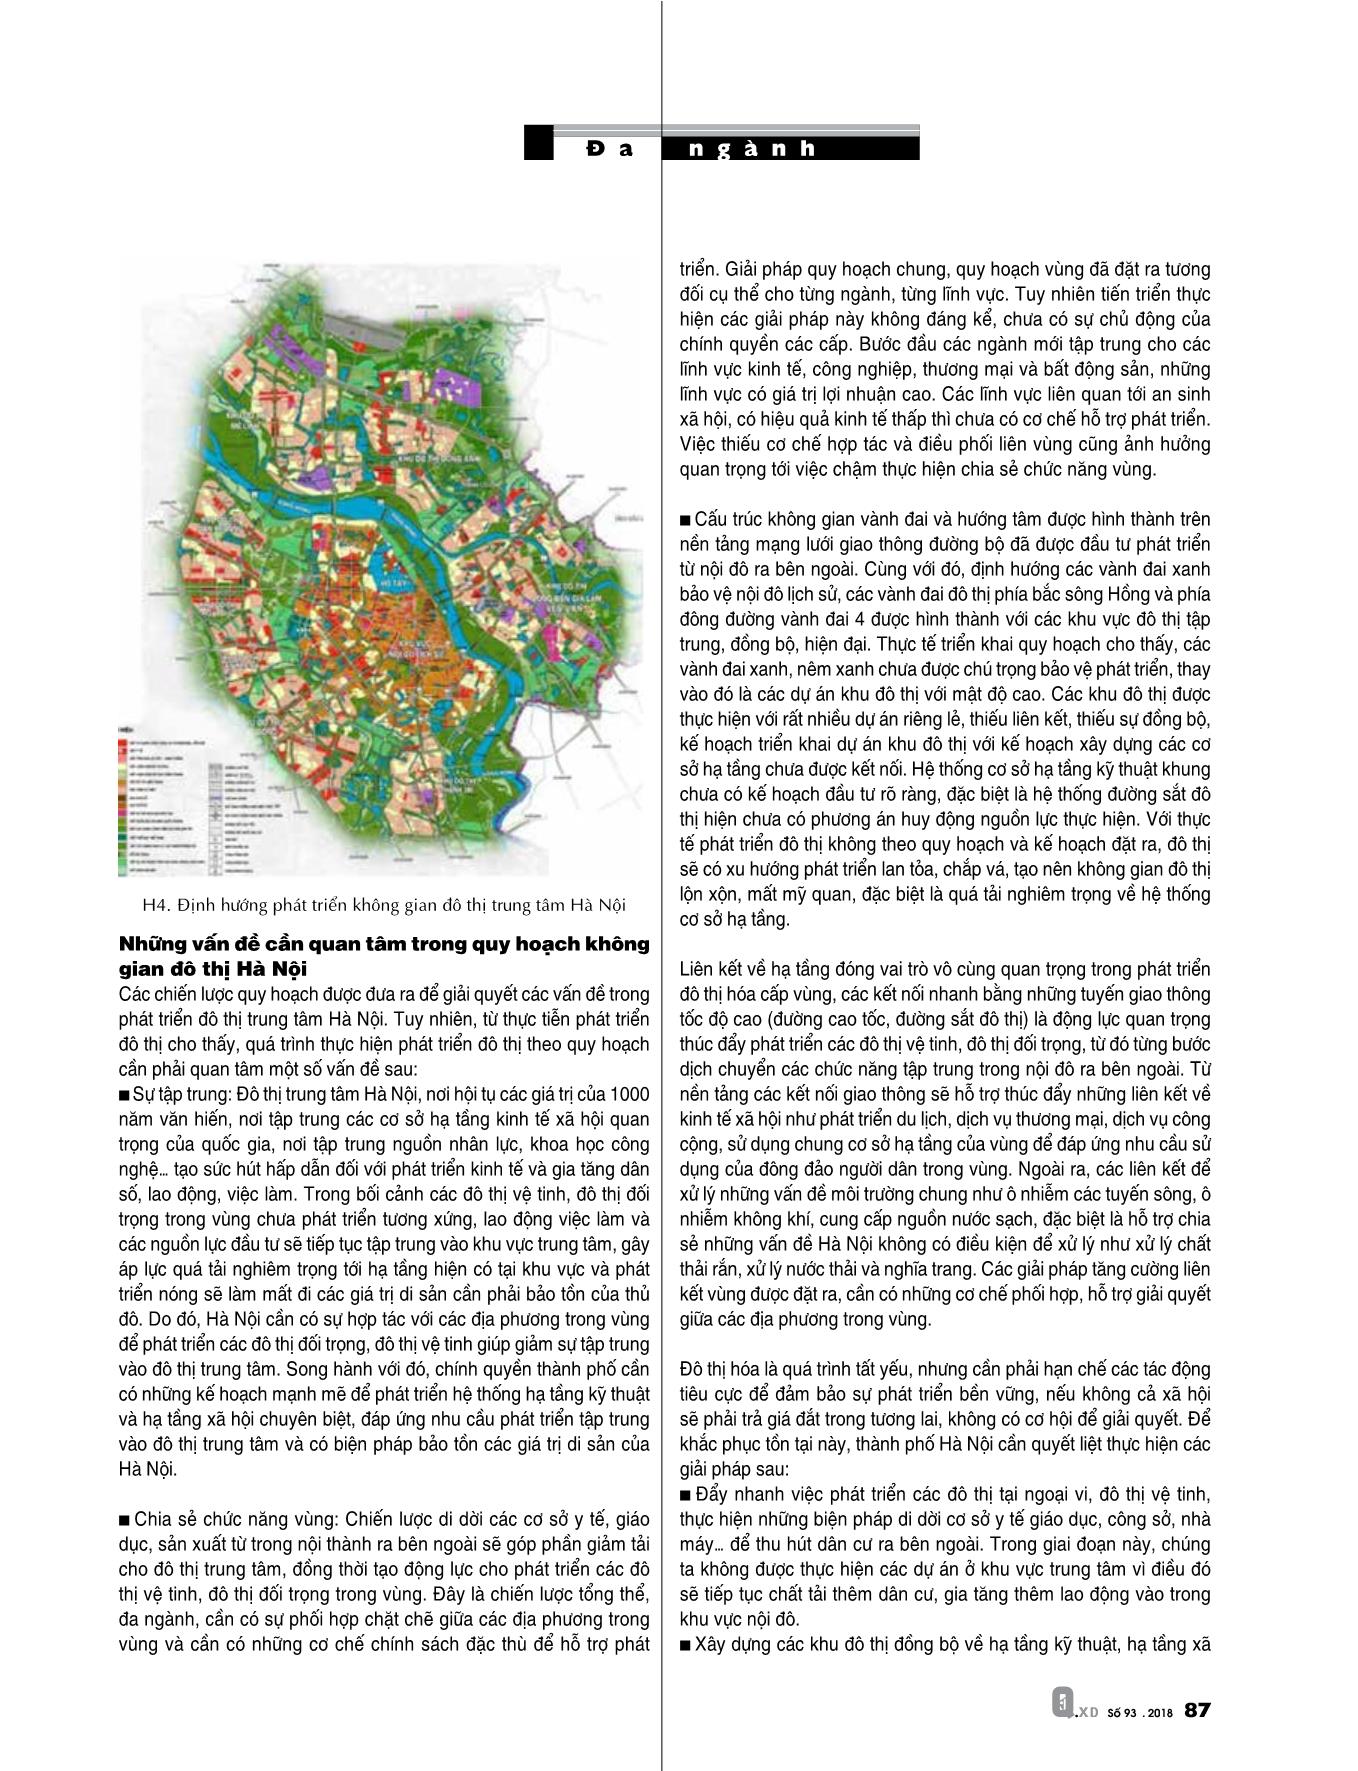 Quy hoạch vùng thủ đô Hà Nội với yêu cầu phát triển đô thị hạt nhân. Những vấn đề cần quan tâm trong quy hoạch không gian đô thị Hà Nội trang 4